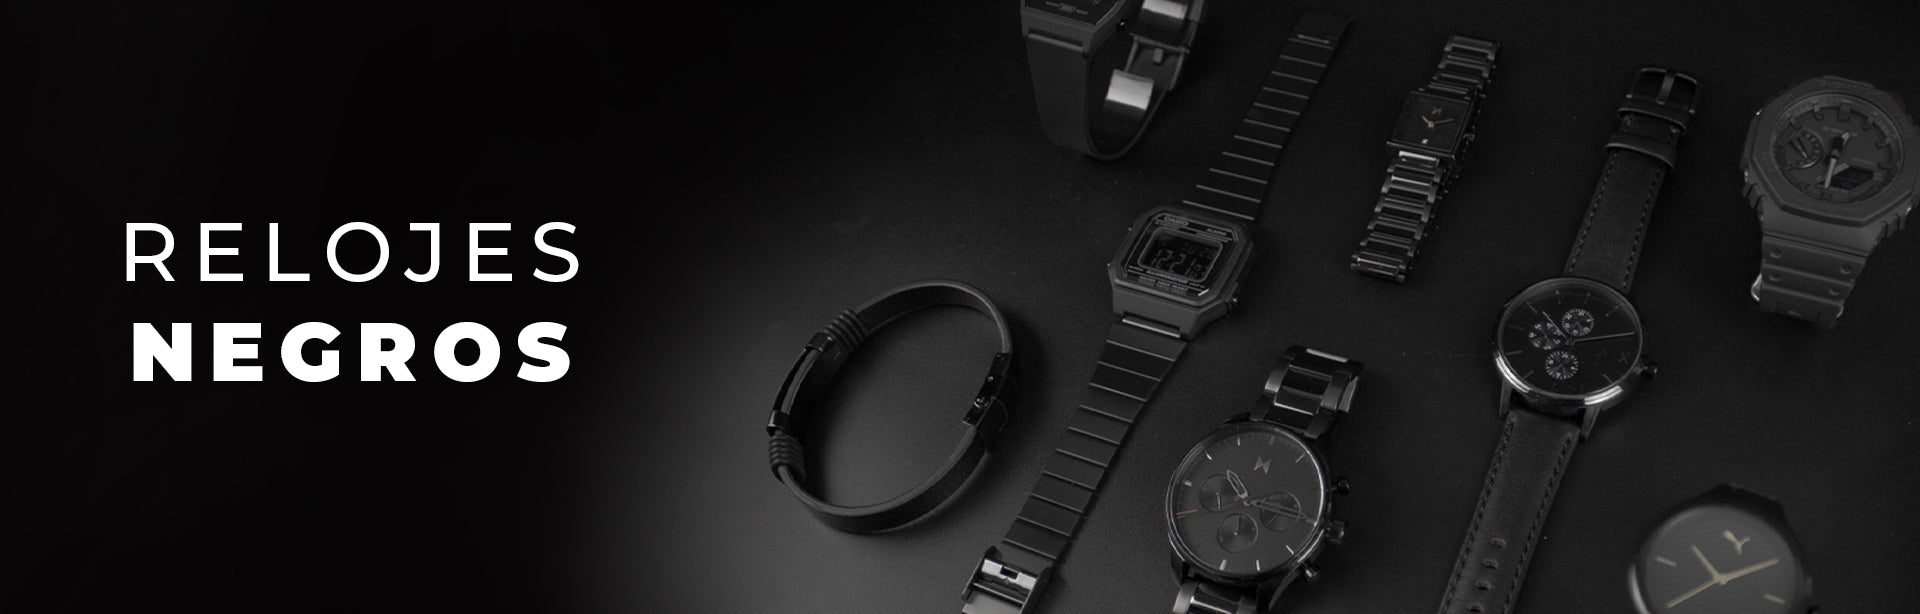 Colección de relojes negros en tendencia y que nunca pasan de moda, un reloj negro es perfecto complemento para cualquier outfit y resaltara tu look, ofertas de hasta 70% de descuento